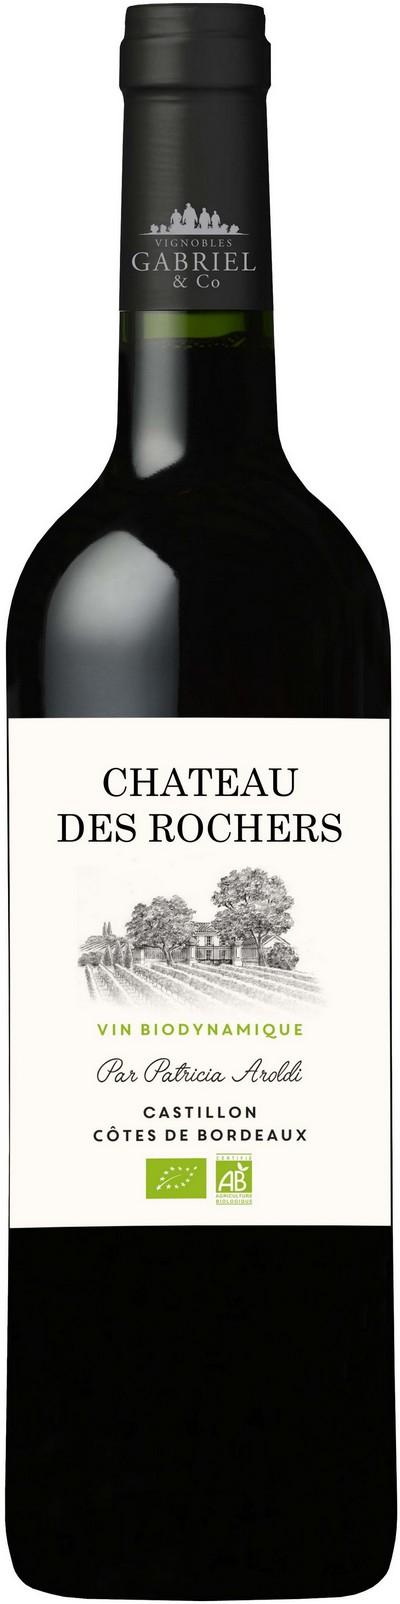 chateau-des-rochers-vin-biodynamique-2019